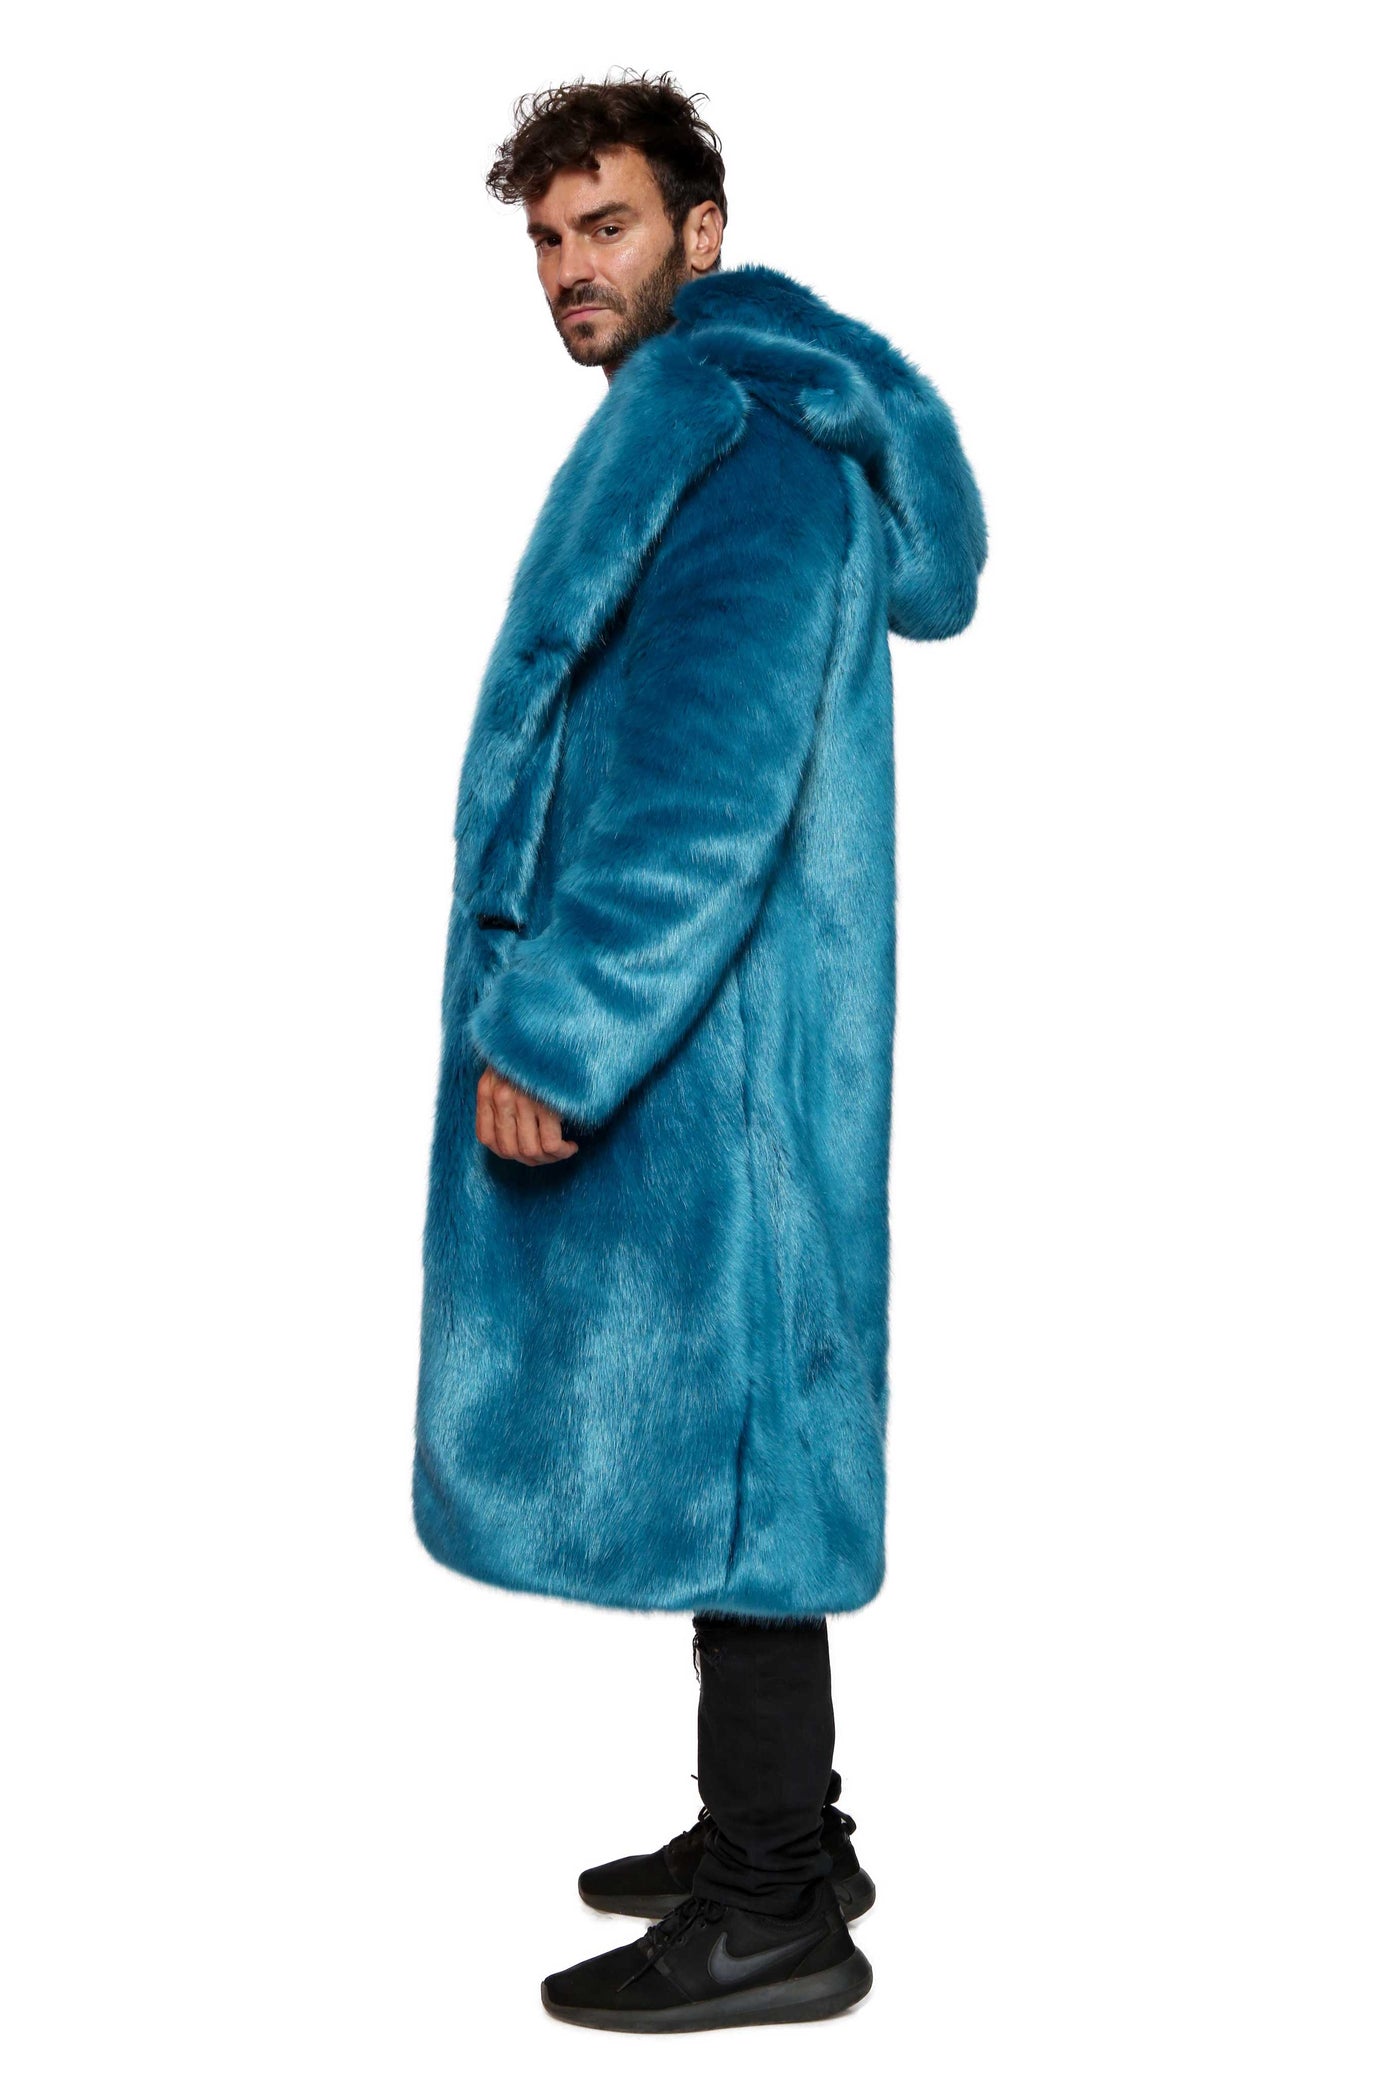 Men's Vandal Coat in "Cookie Monster" Chinchilla